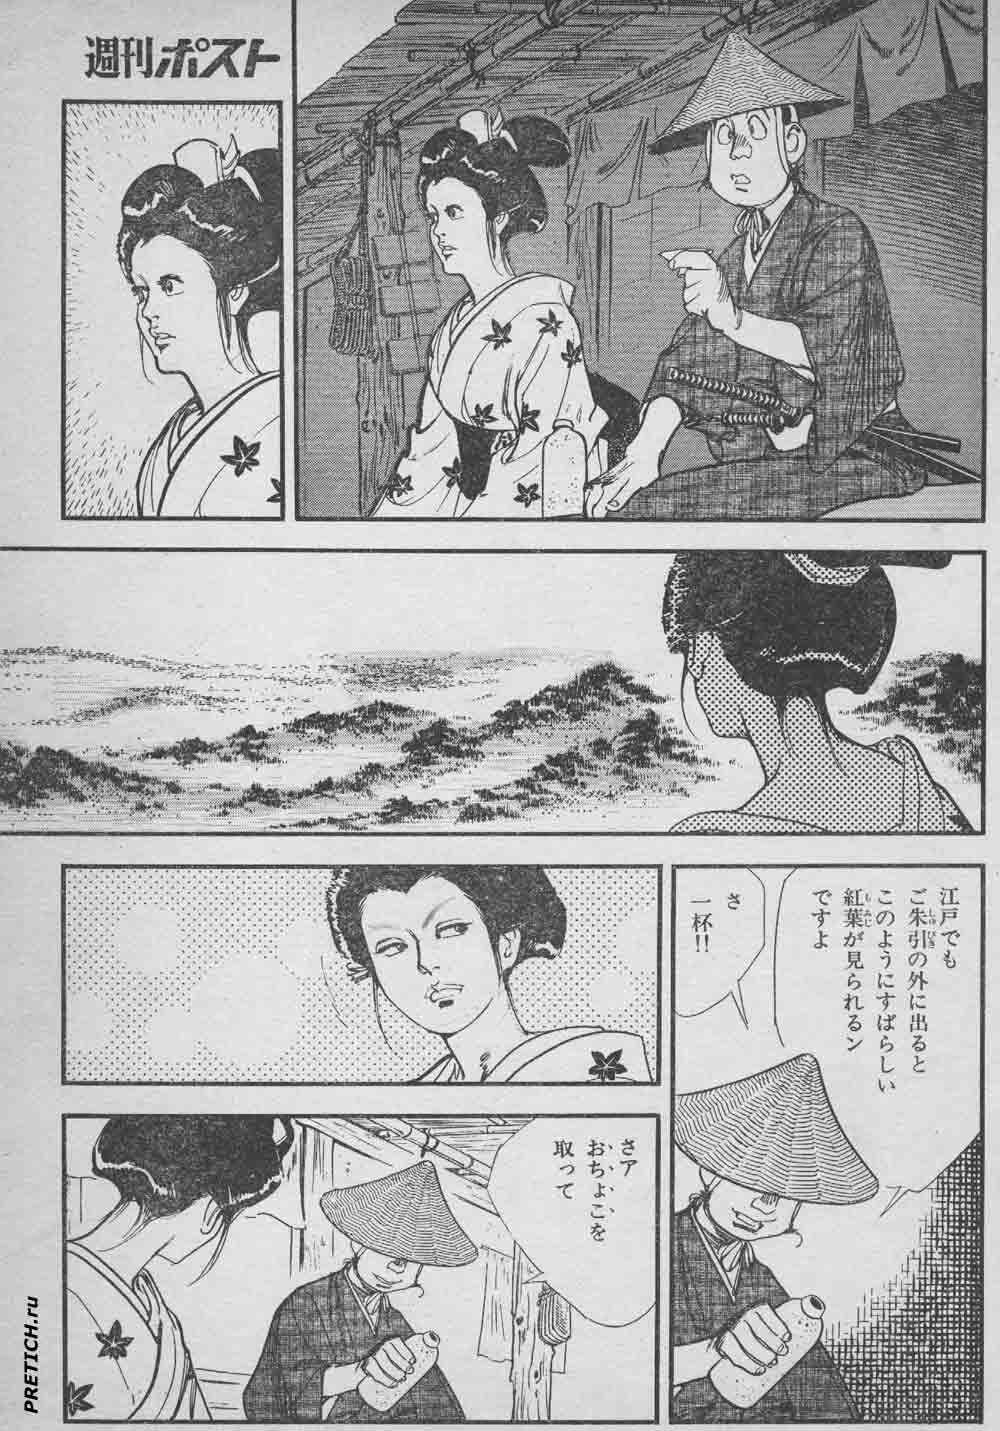 комиксы на японском из журналов